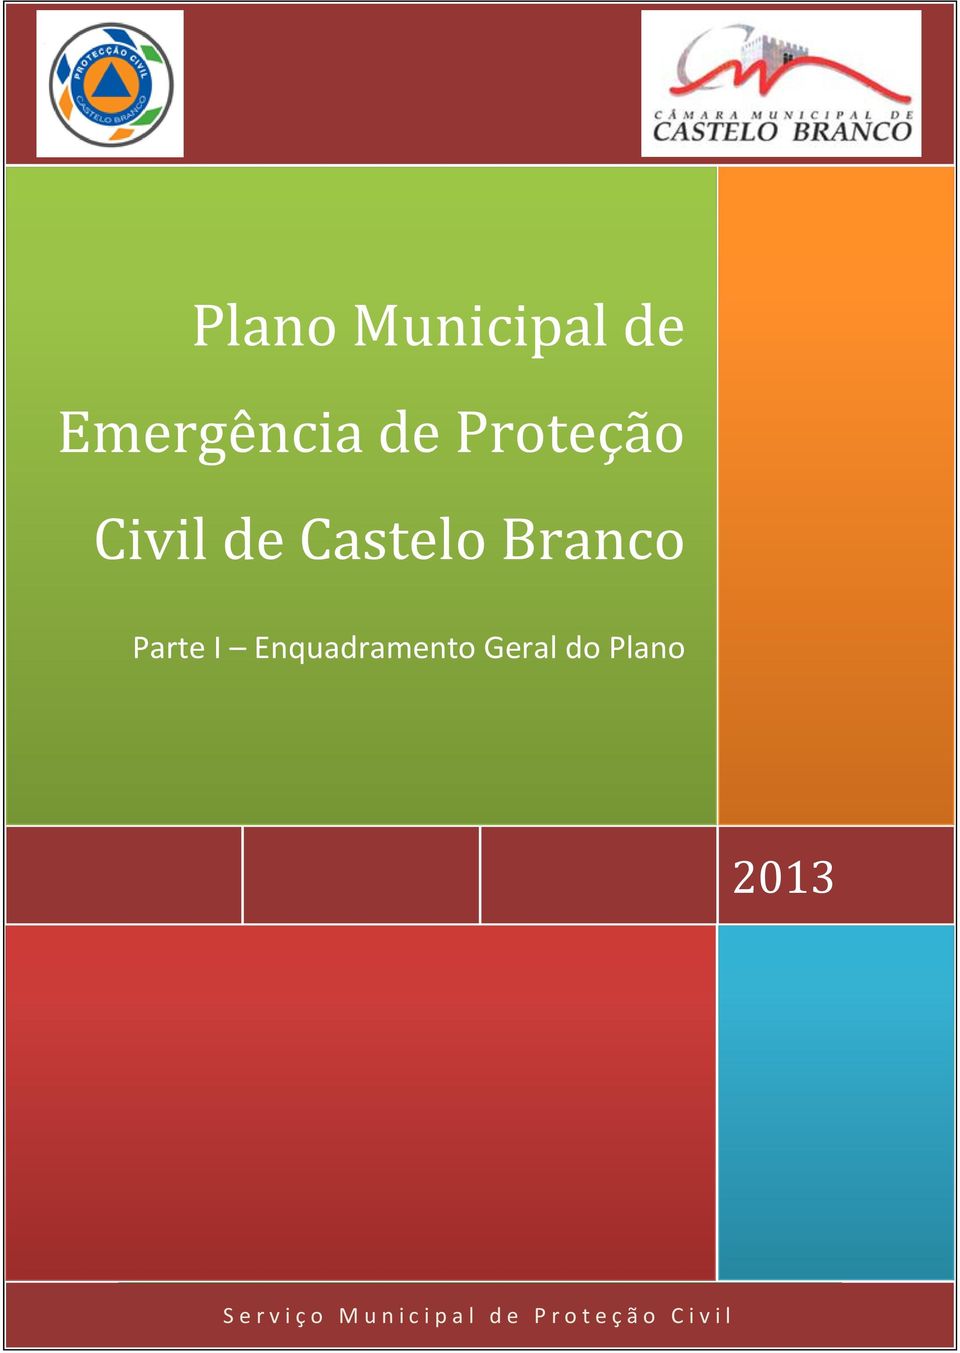 2013 nquadramento Geral do Plano (Parte I) S e r v